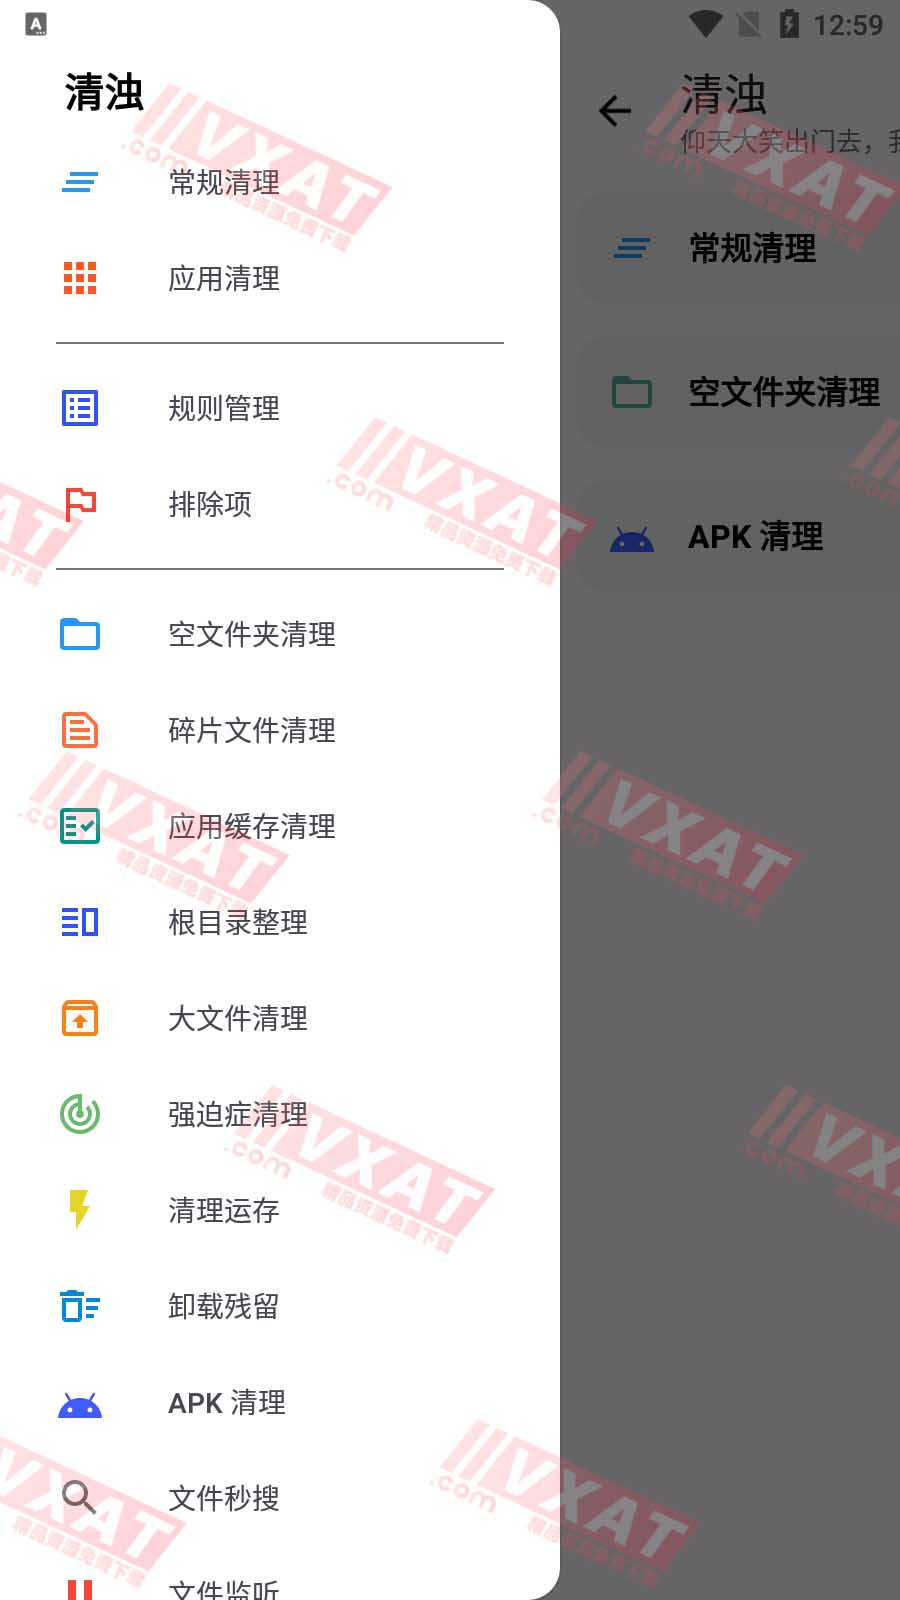 清浊 newYear-1 新年版 解锁高级功能 第1张